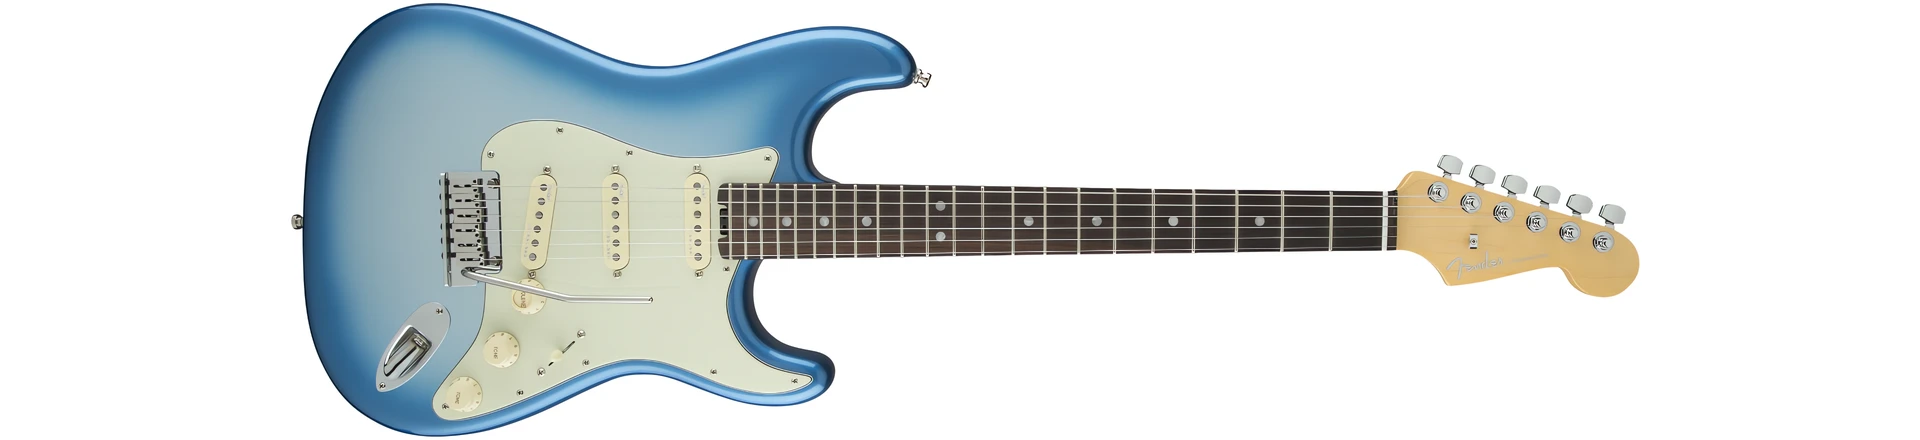 Fender American Elite Stratocaster. Już 71 lat w biznesie...